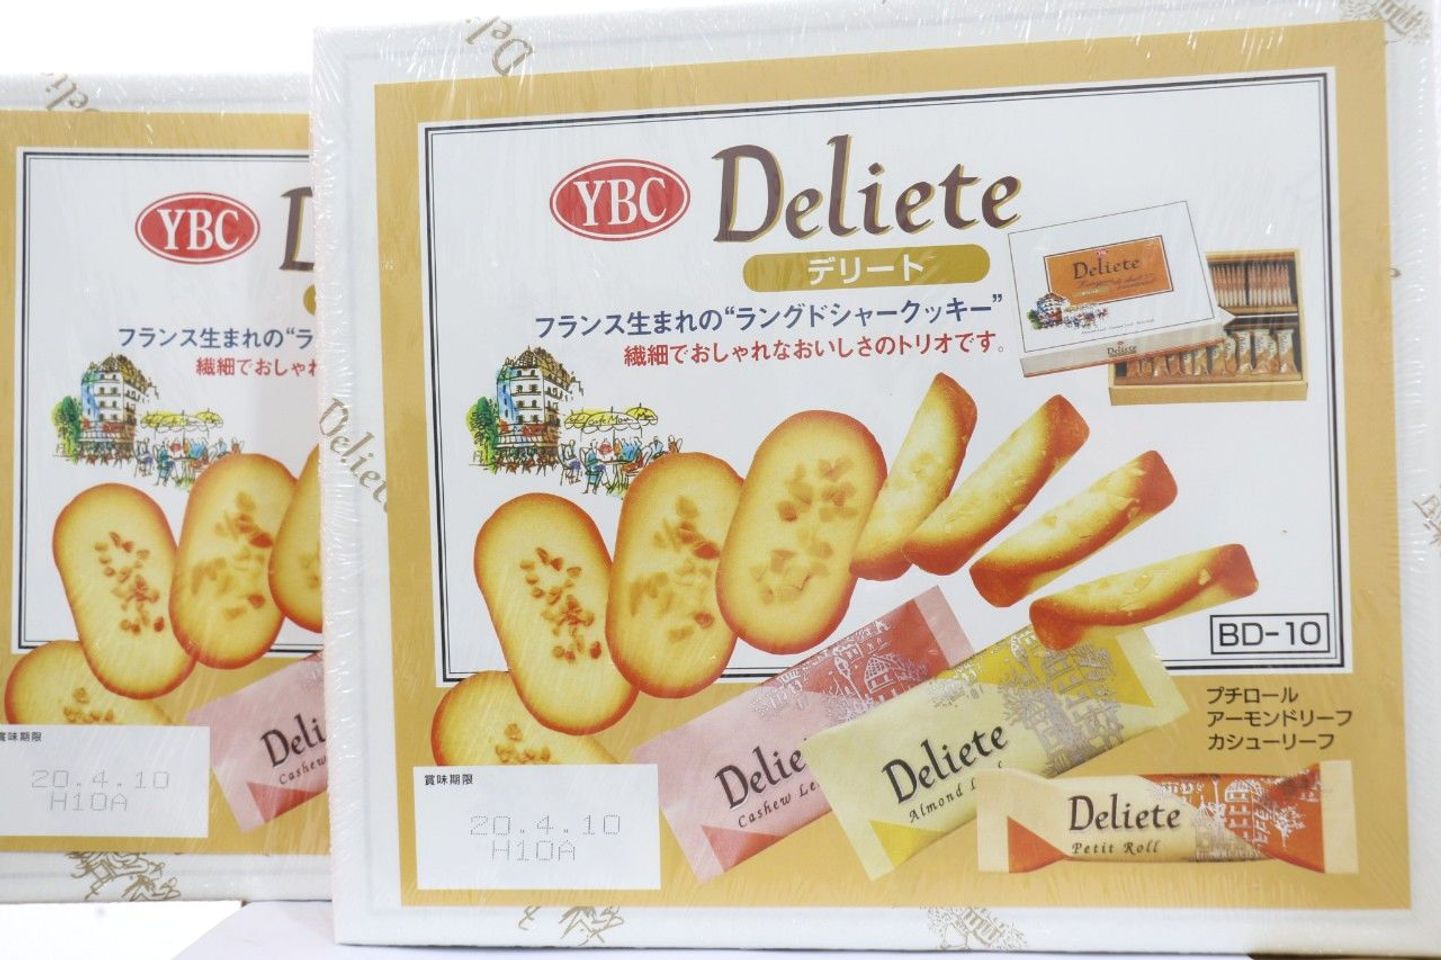 Bánh quy YBC Deliete 60 cái Nhật Bản - món quà ngày tết hoàn hảo